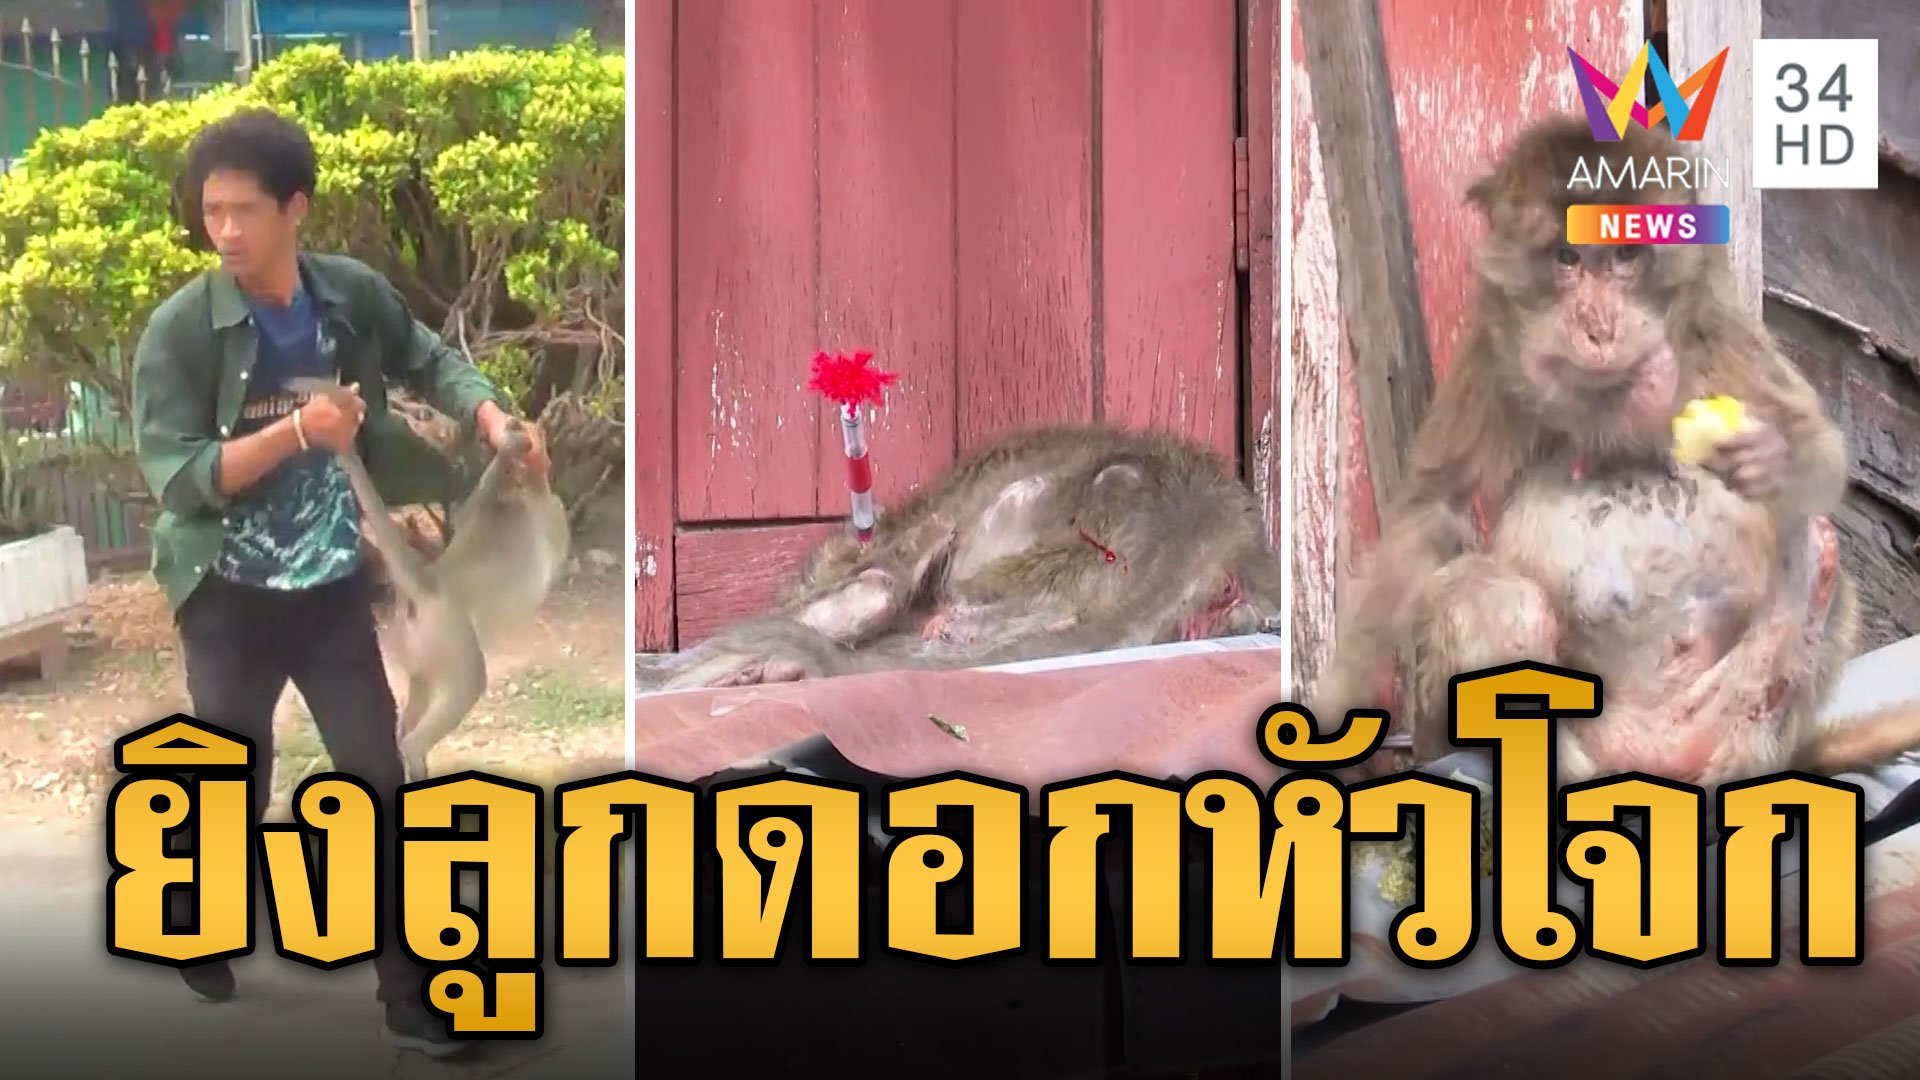 จับลิงเกเรวันที่ 2 ดราม่าไม่จบวิธีจับรุ่นแรง ยิงลูกดอกหัวโจก | ข่าวอรุณอมรินทร์ | 27 มี.ค. 67 | AMARIN TVHD34